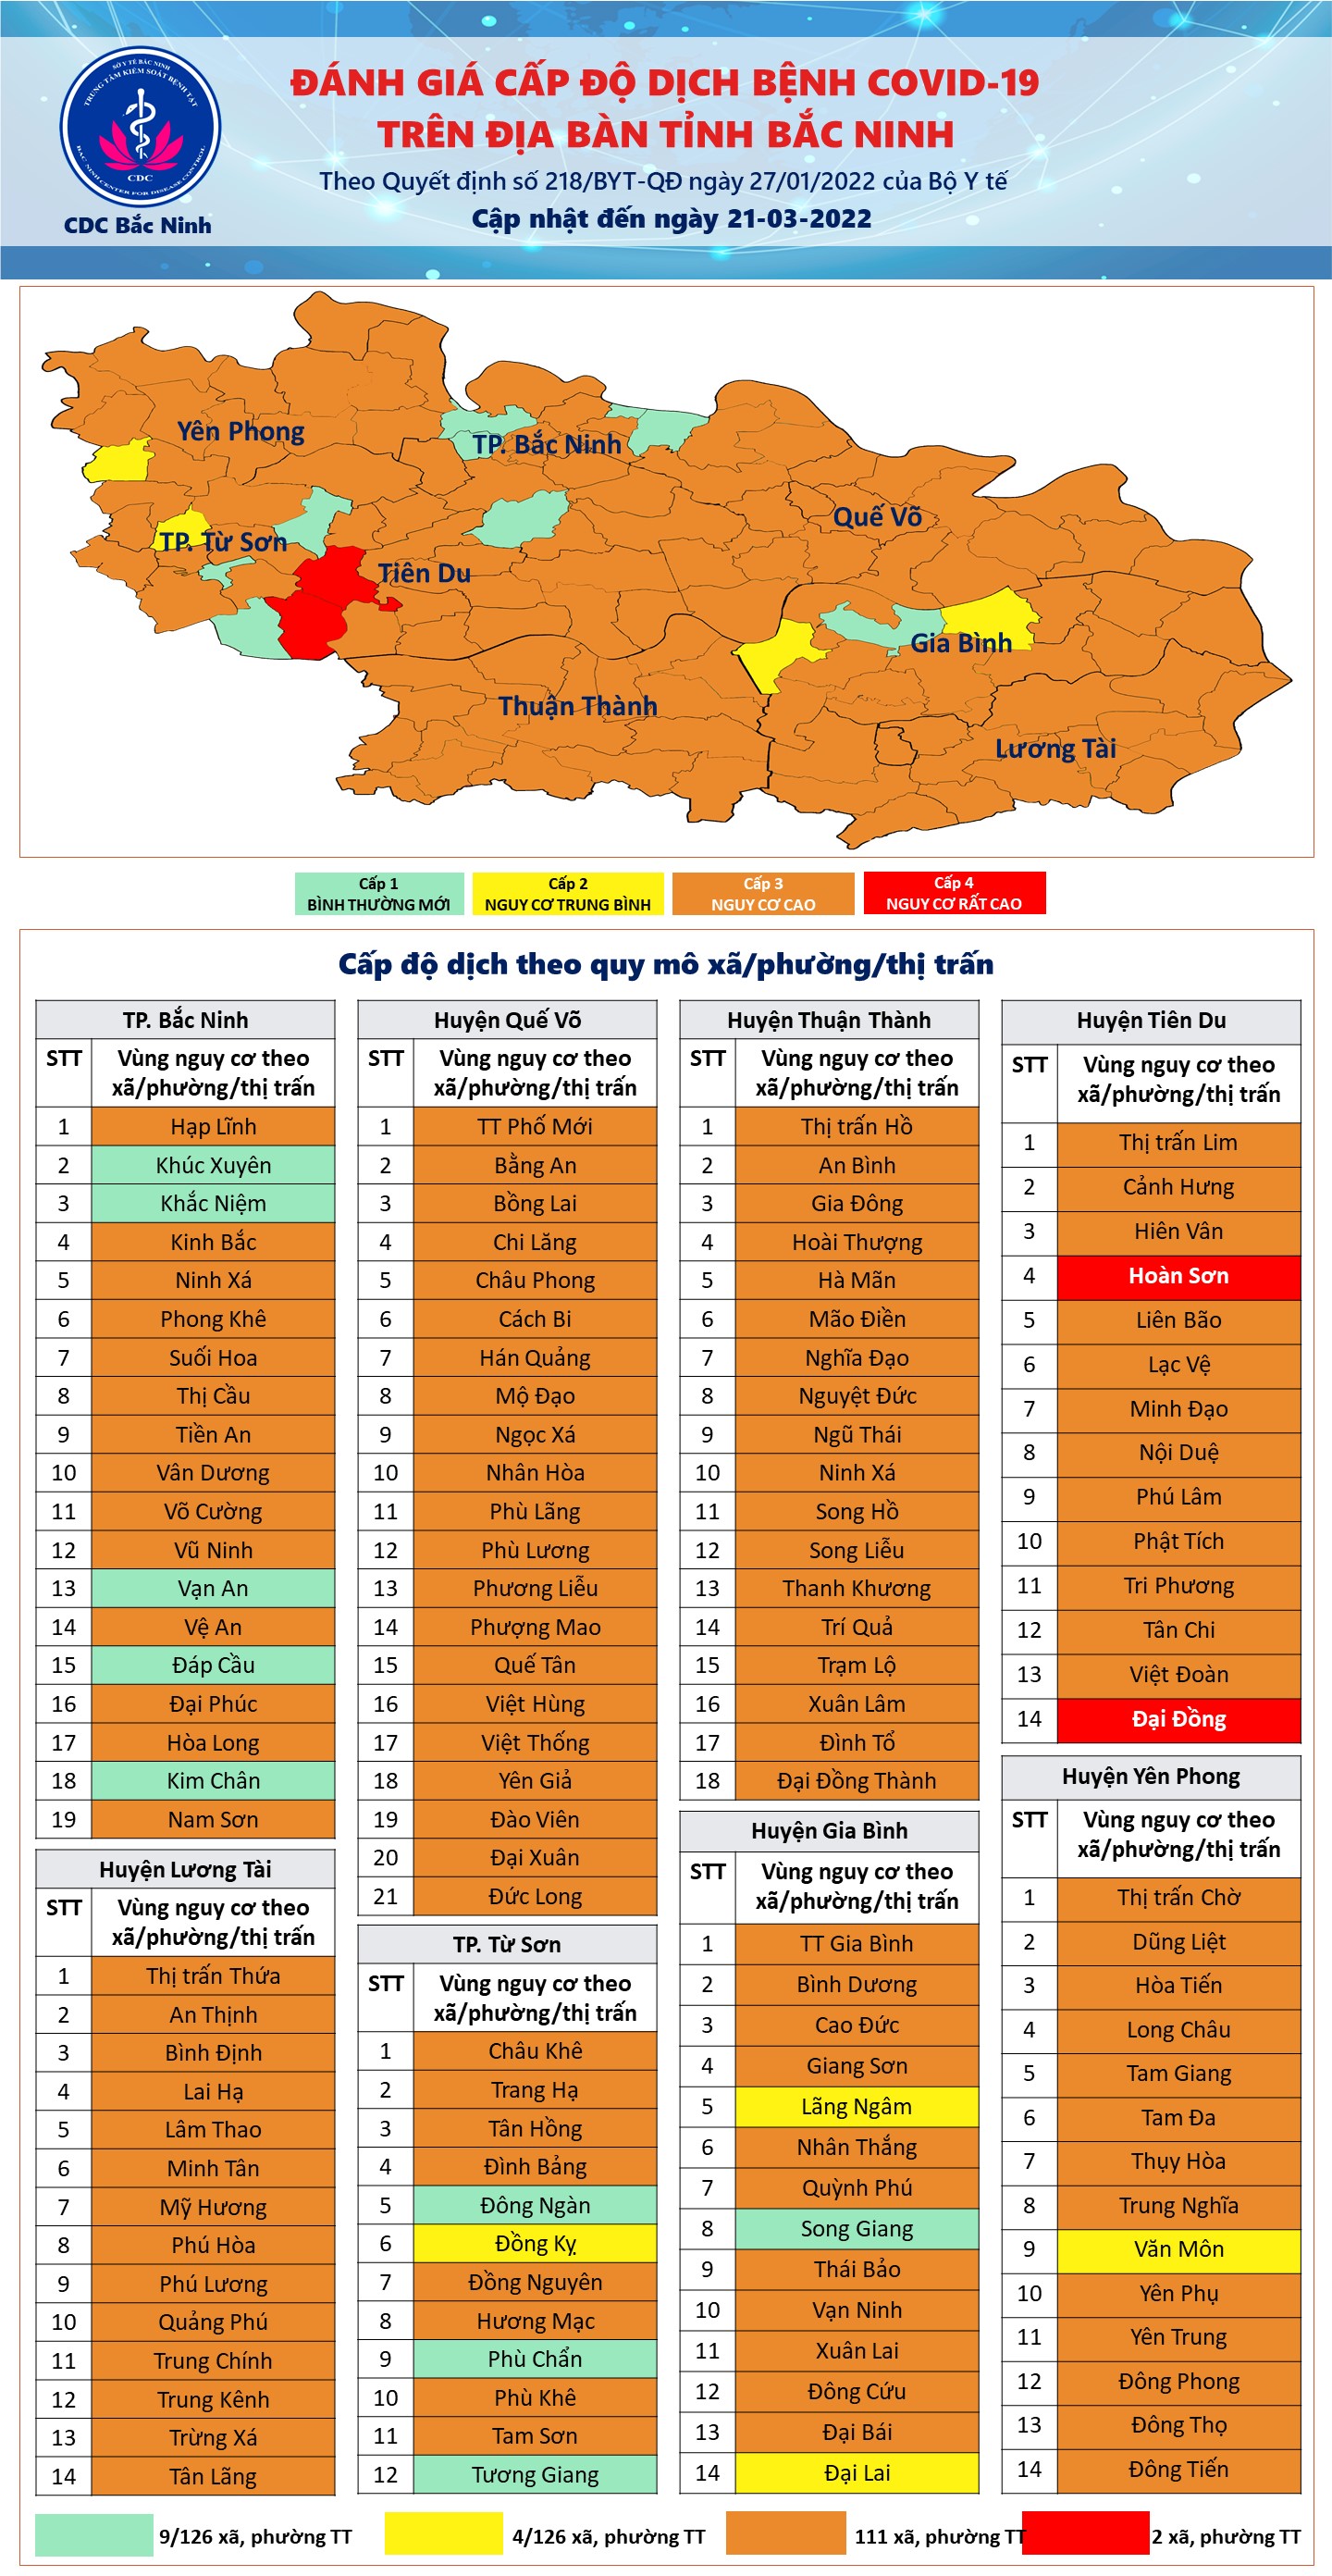 Cấp độ dịch COVID-19 tỉnh Bắc Ninh